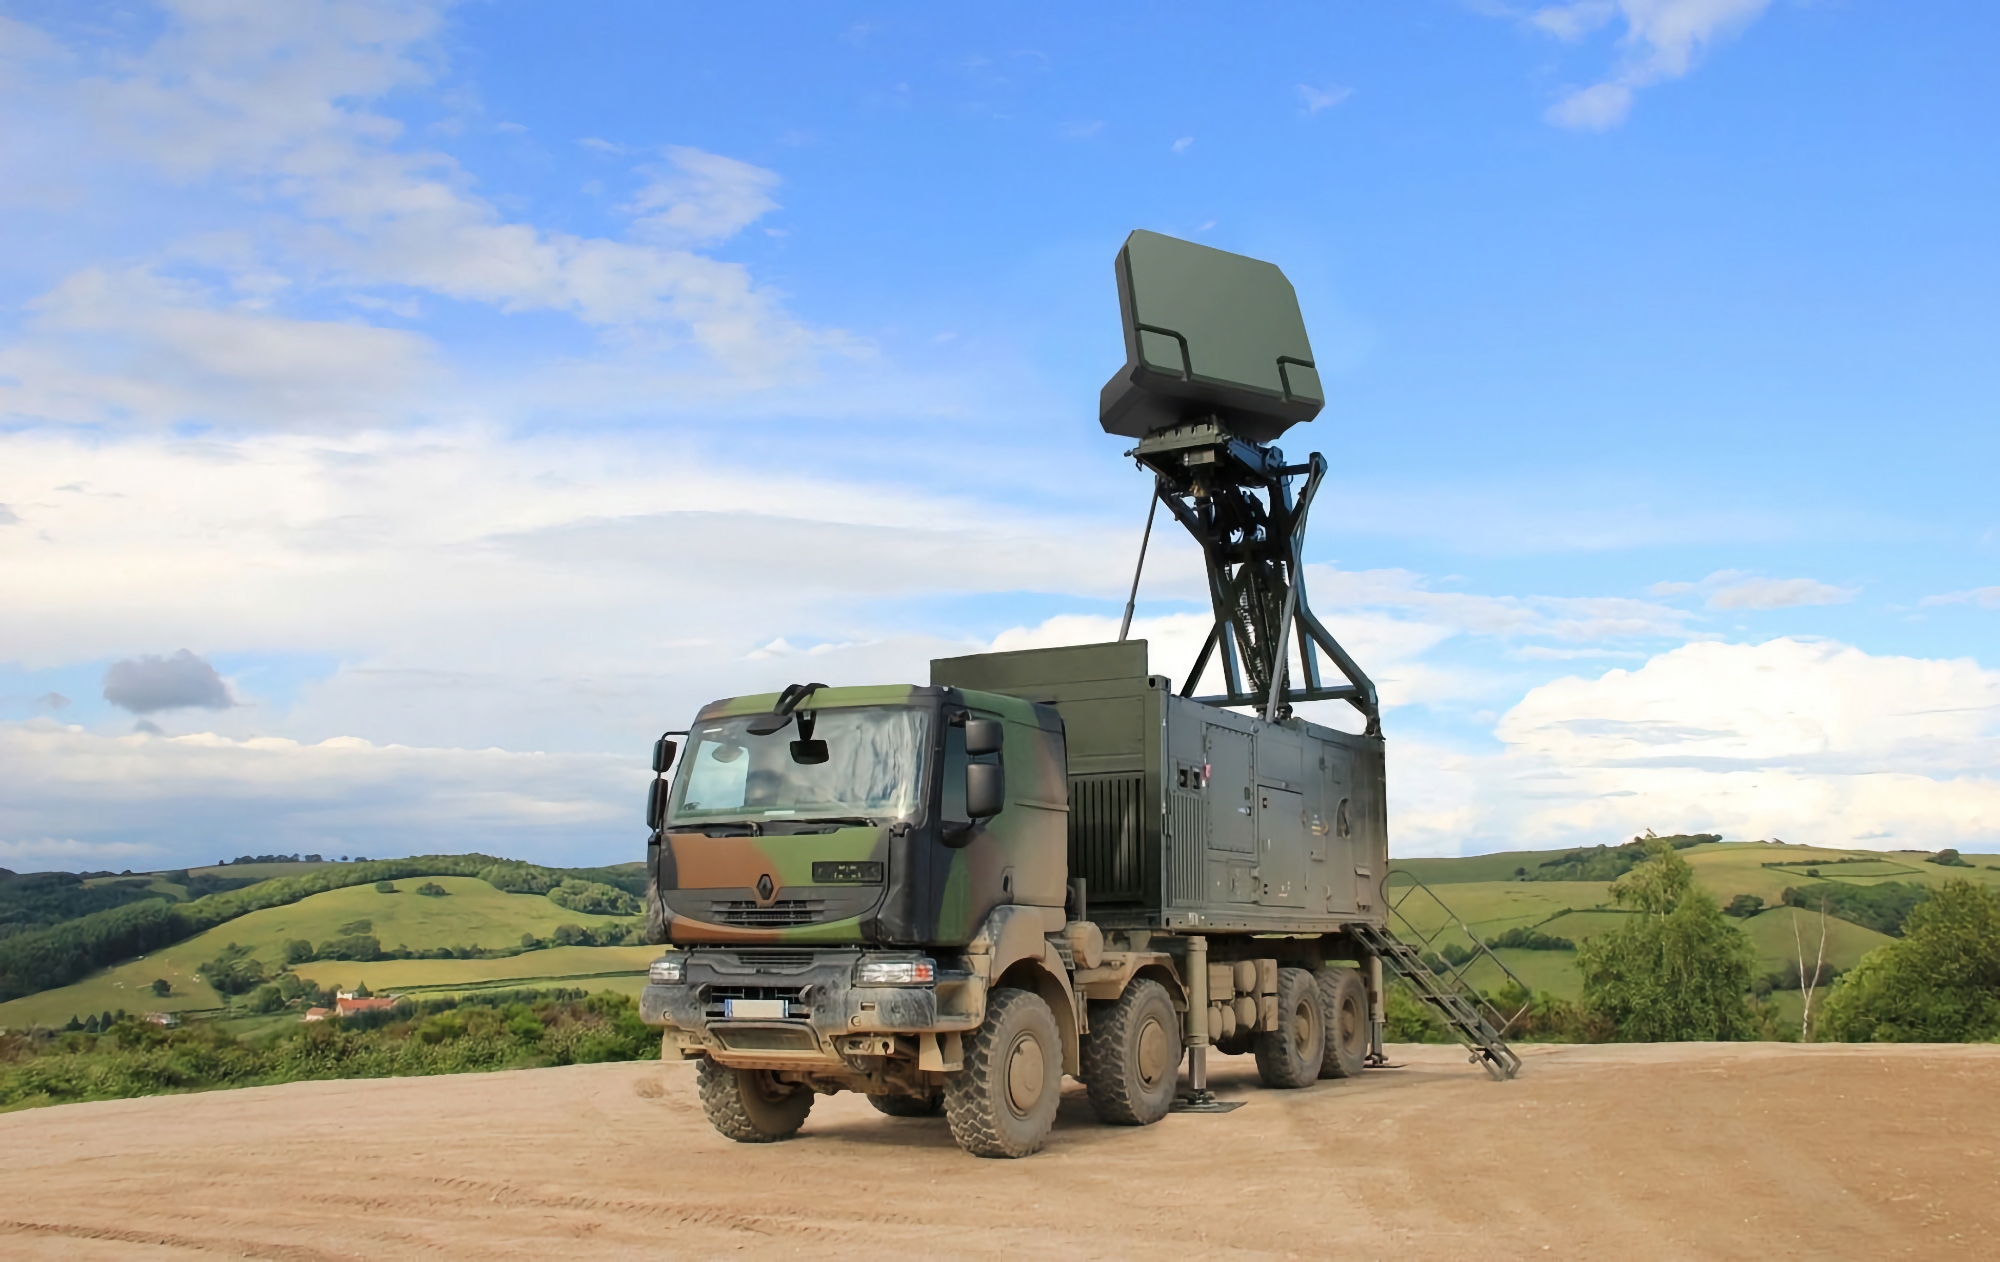 La Moldavia intende acquistare i radar francesi Ground Master 200, in grado di rilevare obiettivi aerei, terrestri e marini a una distanza massima di 250 chilometri.